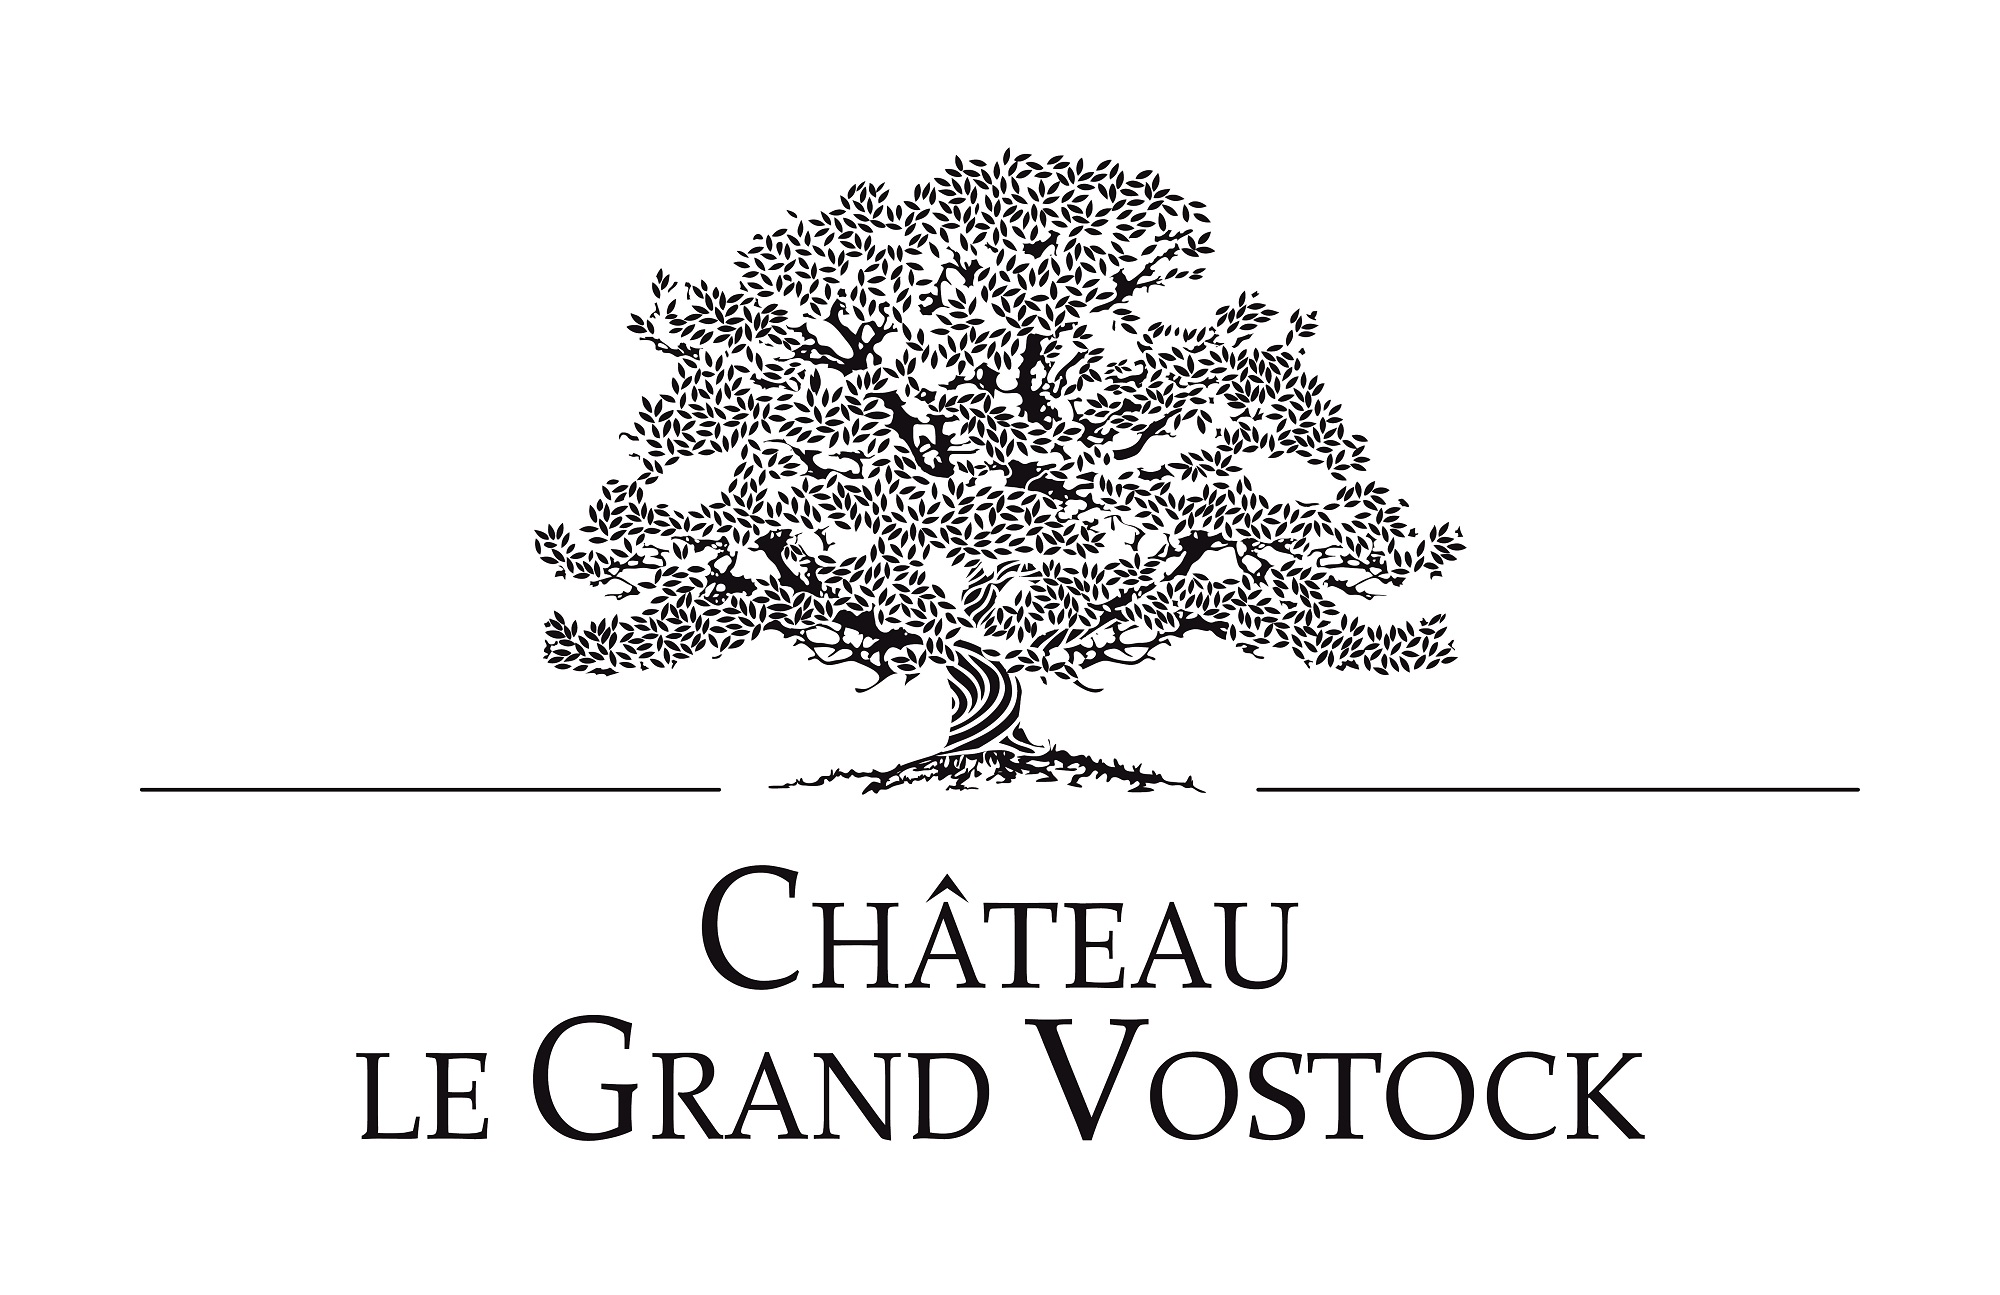 CHATEAU LE GRAND VOSTOCK